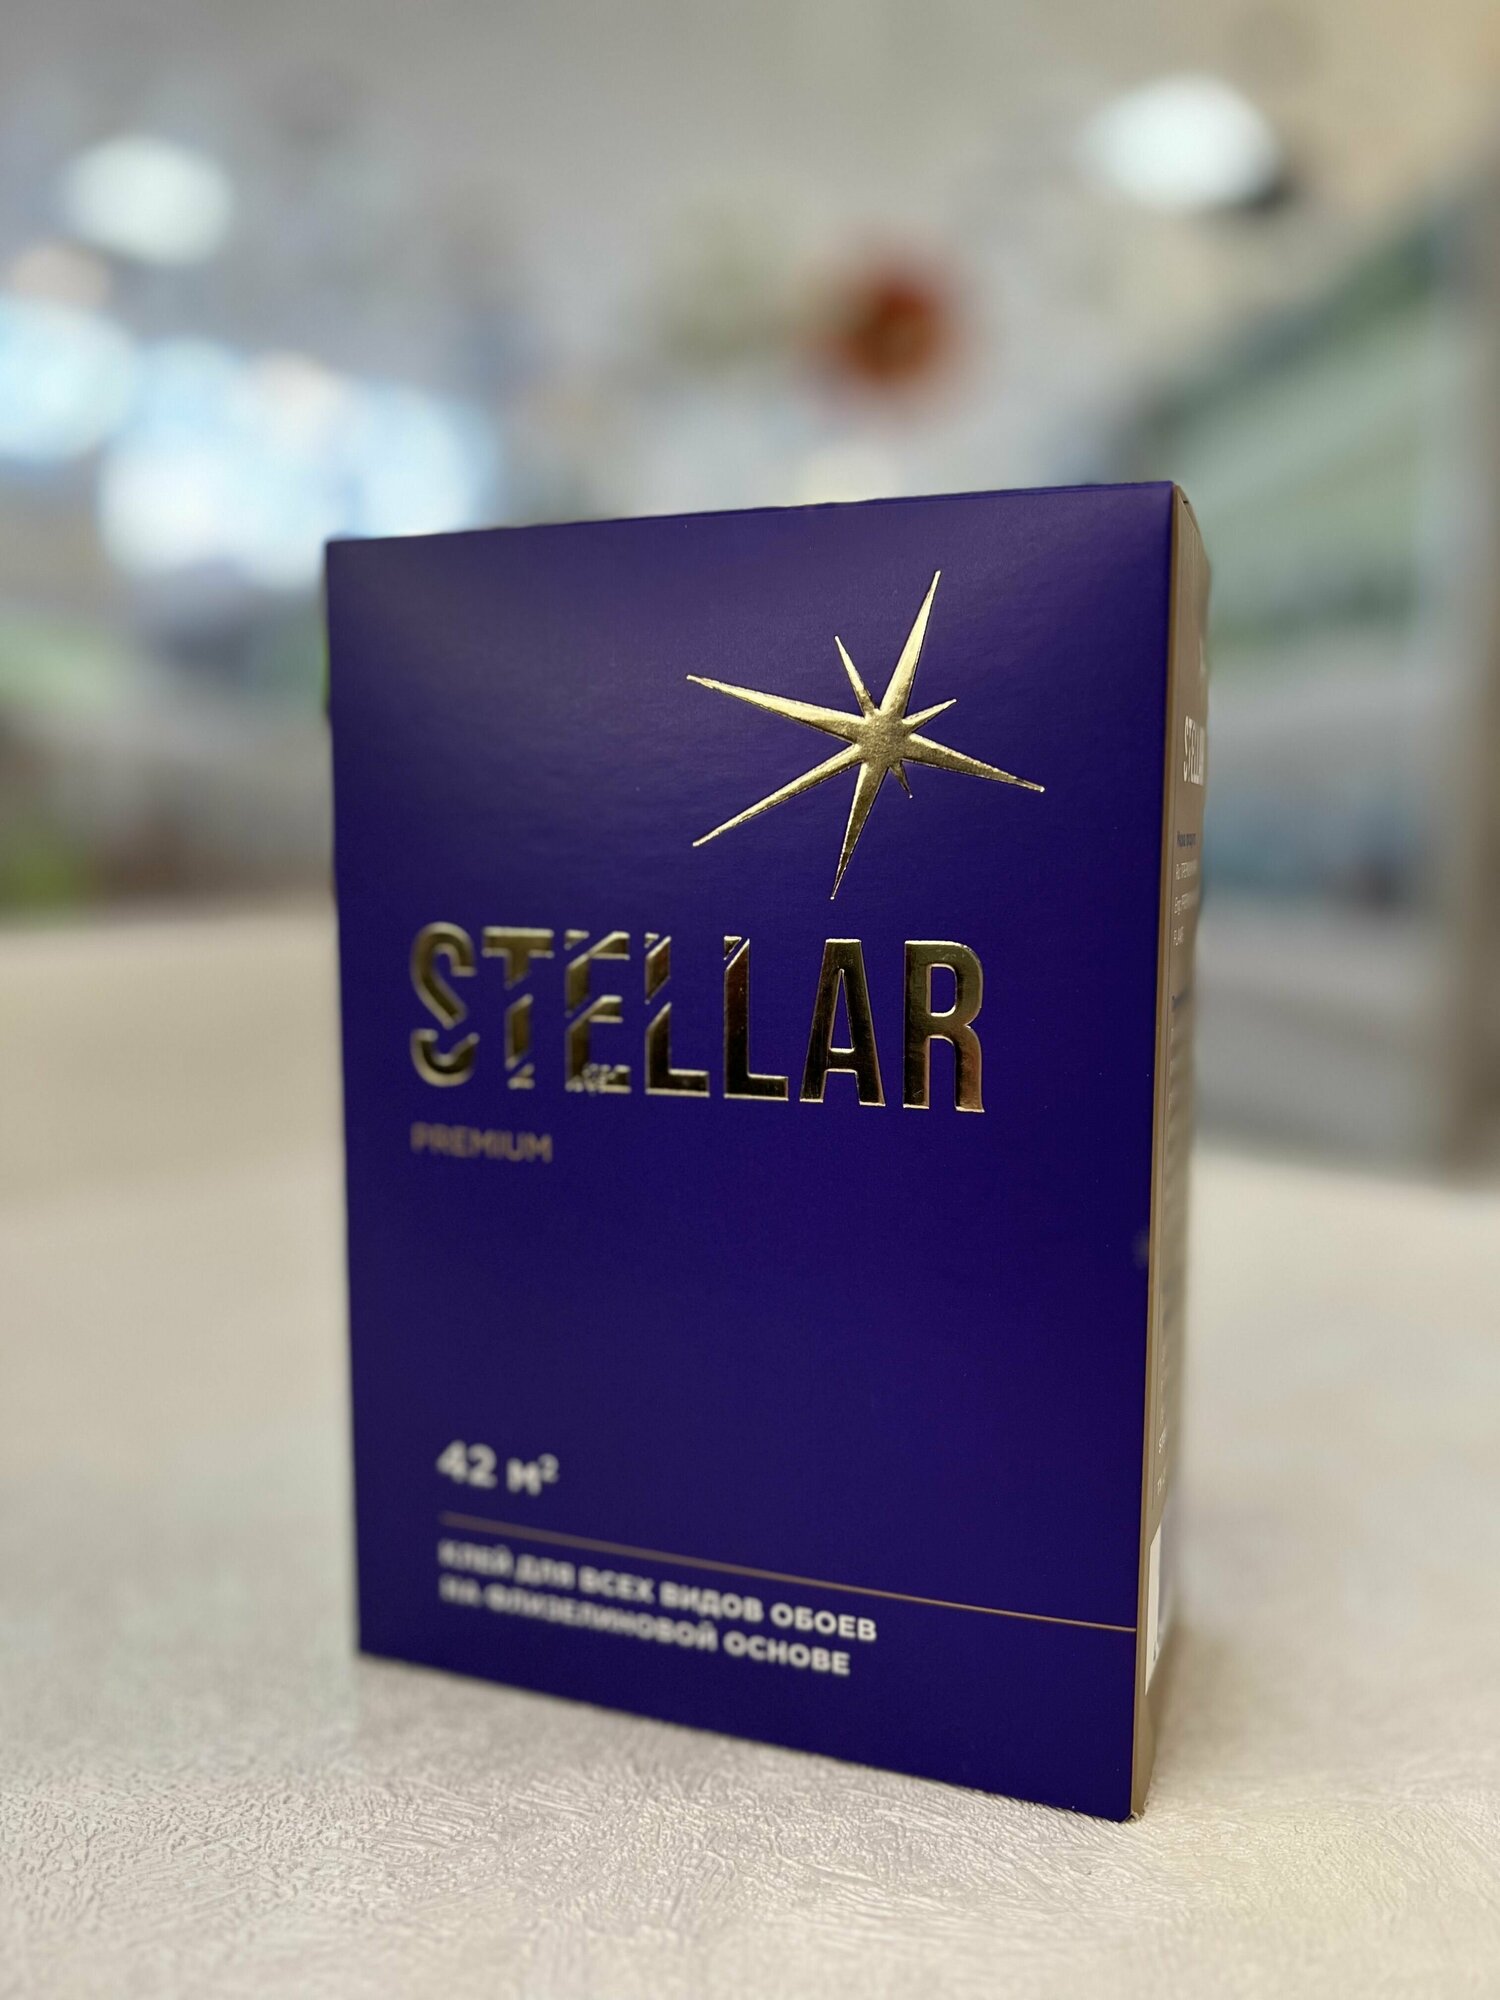 Клей обойный Stellar premium флизелиновый 224гр (42кв. м) крахмал пва противогрибковый